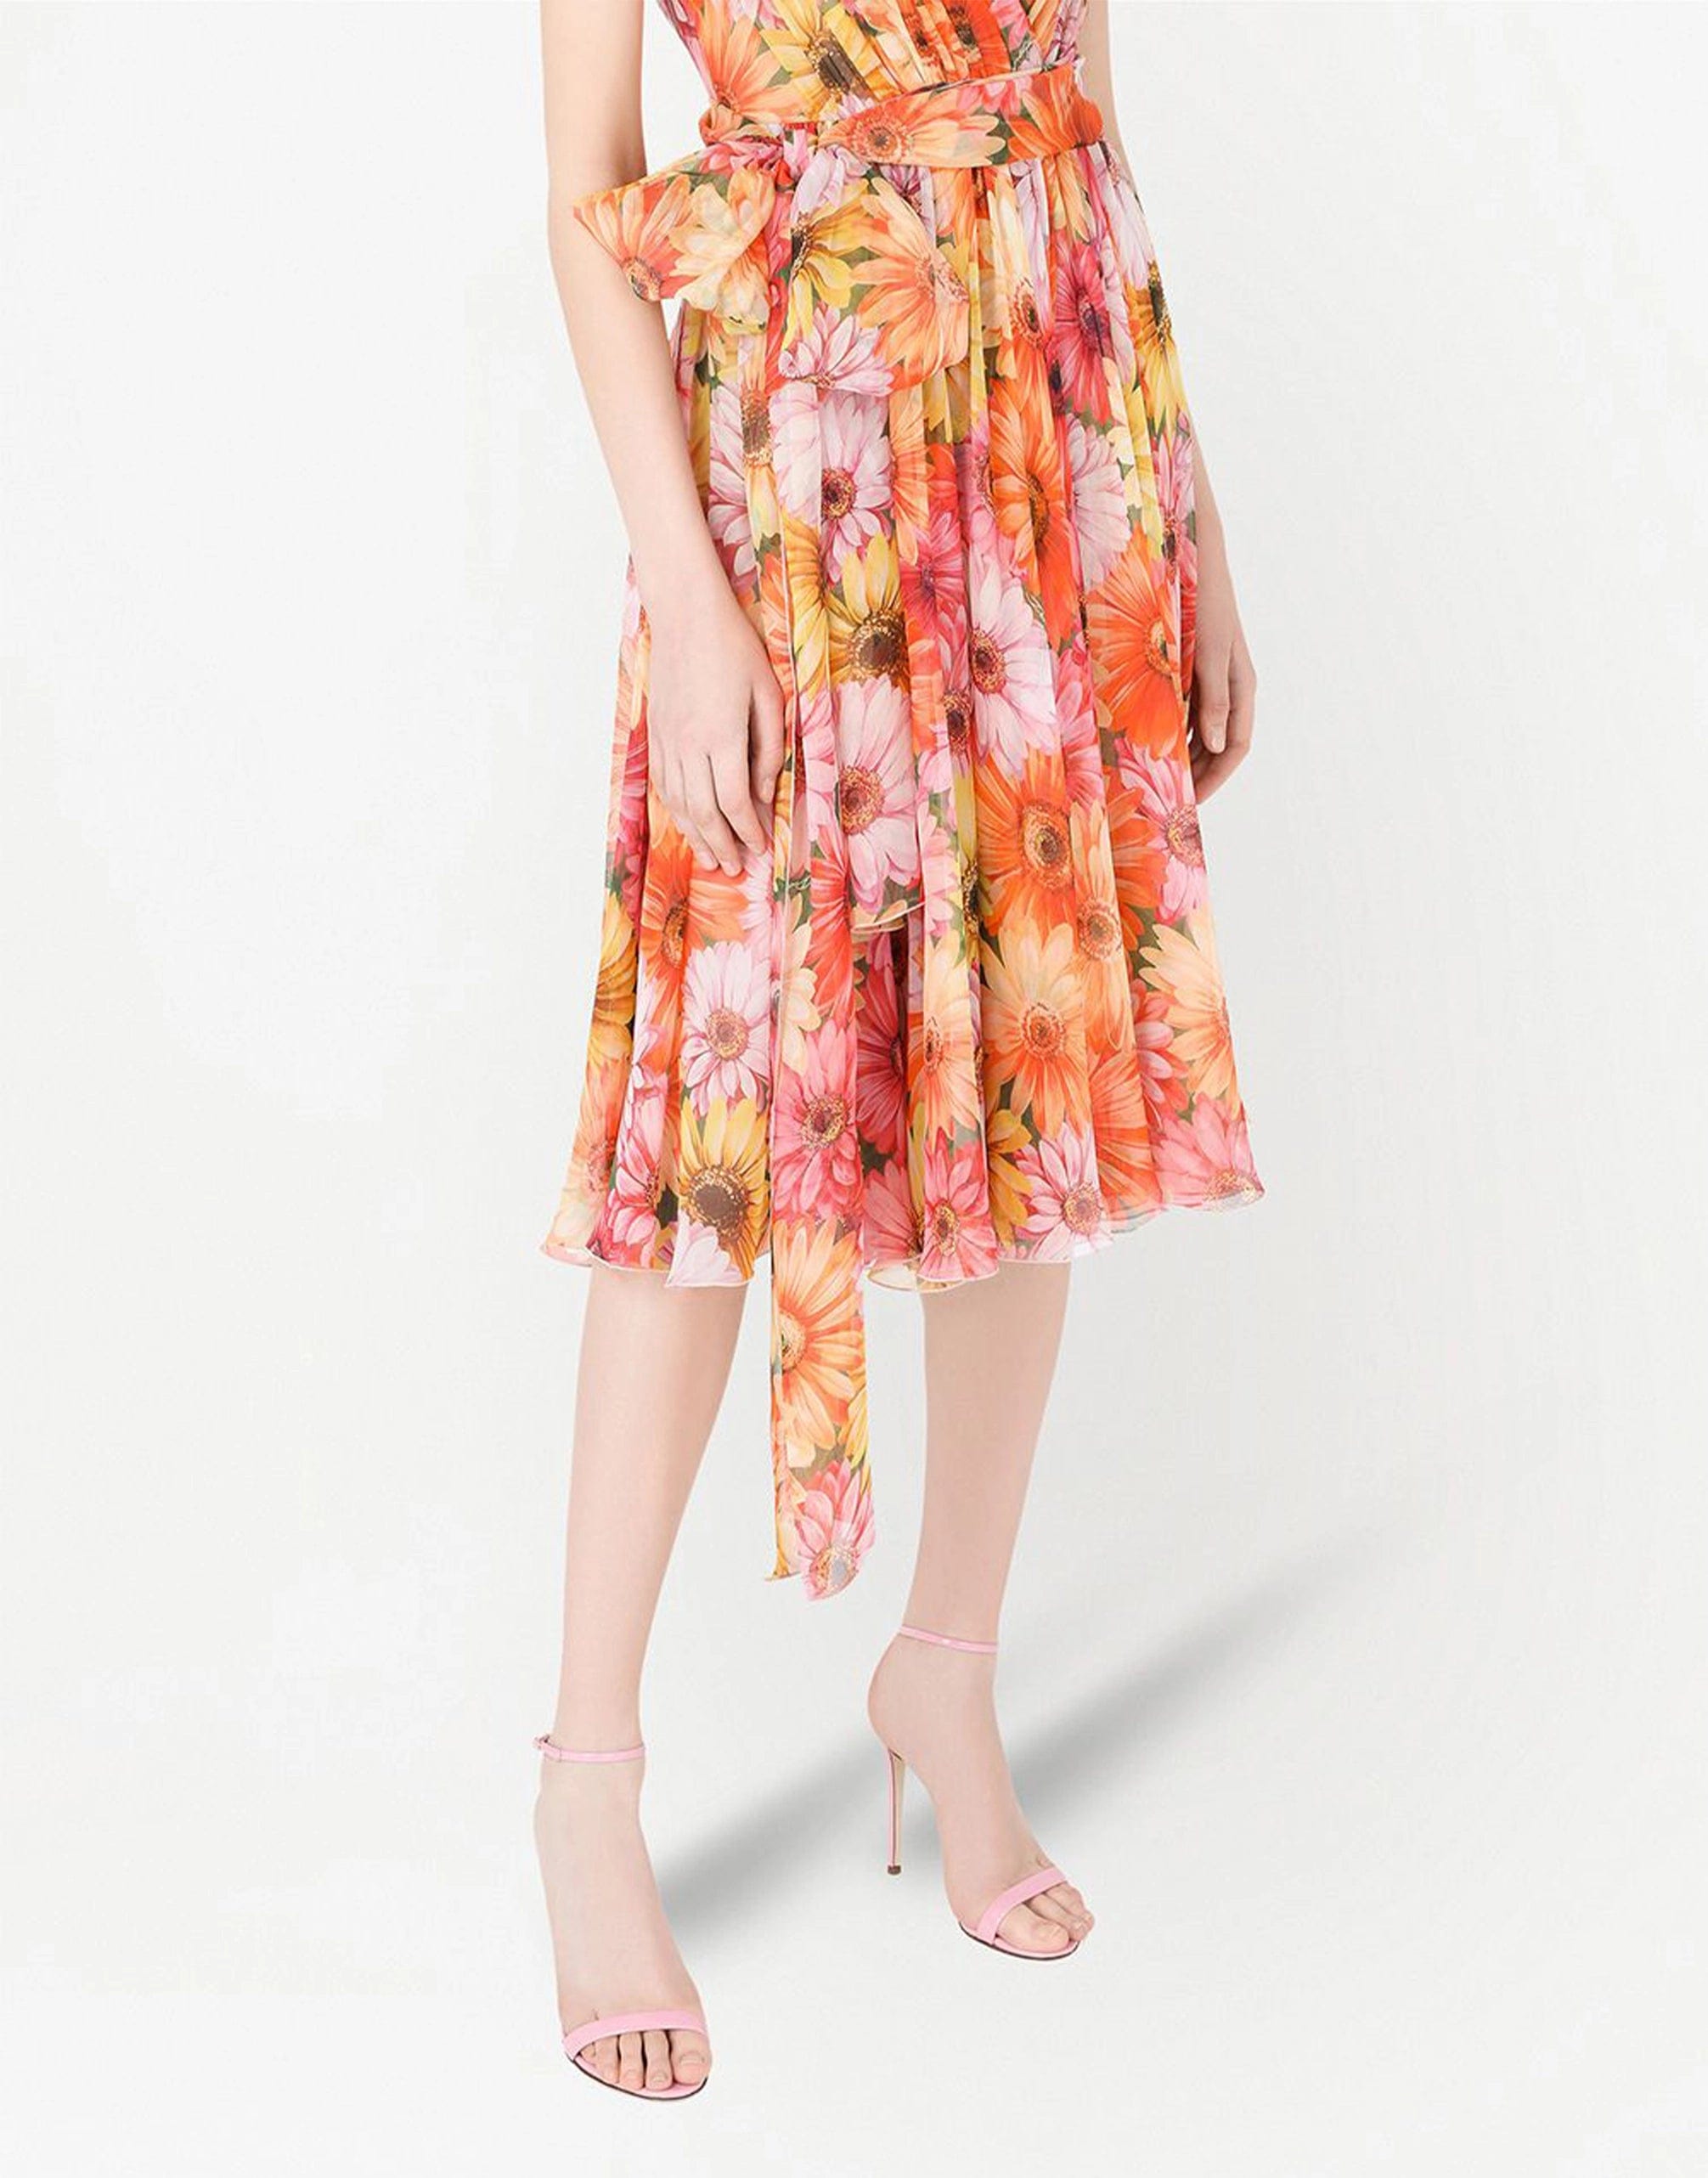 Dolce & Gabbana Daisy Print Chiffon Dress